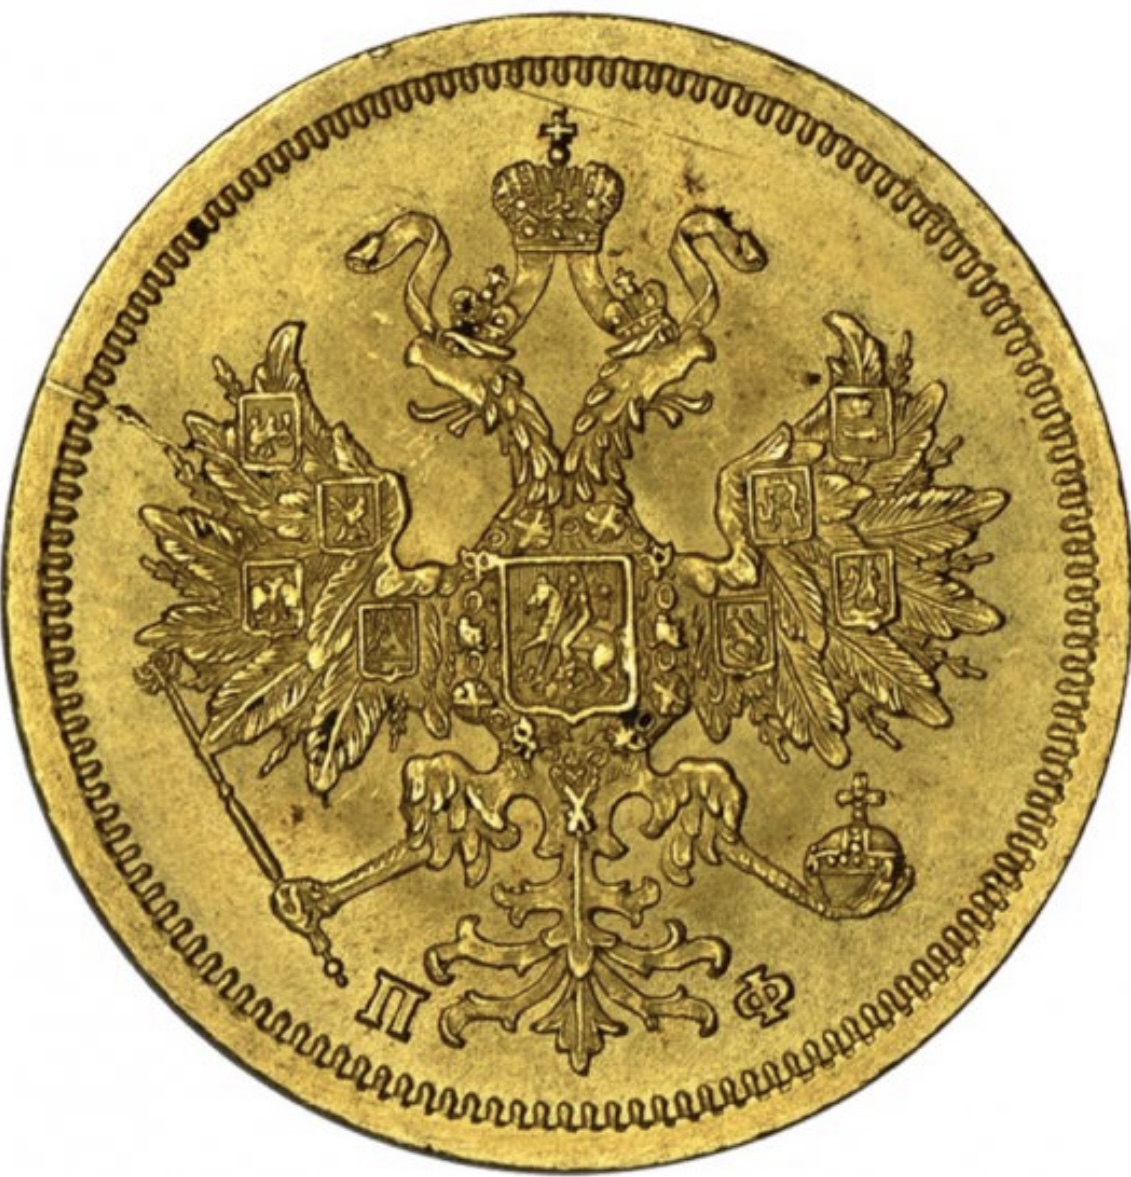 ルーブル 貨幣 現代もロシアなどで使われているお金の価値 エブリデイゴールドラッシュコンシェルジュブログ